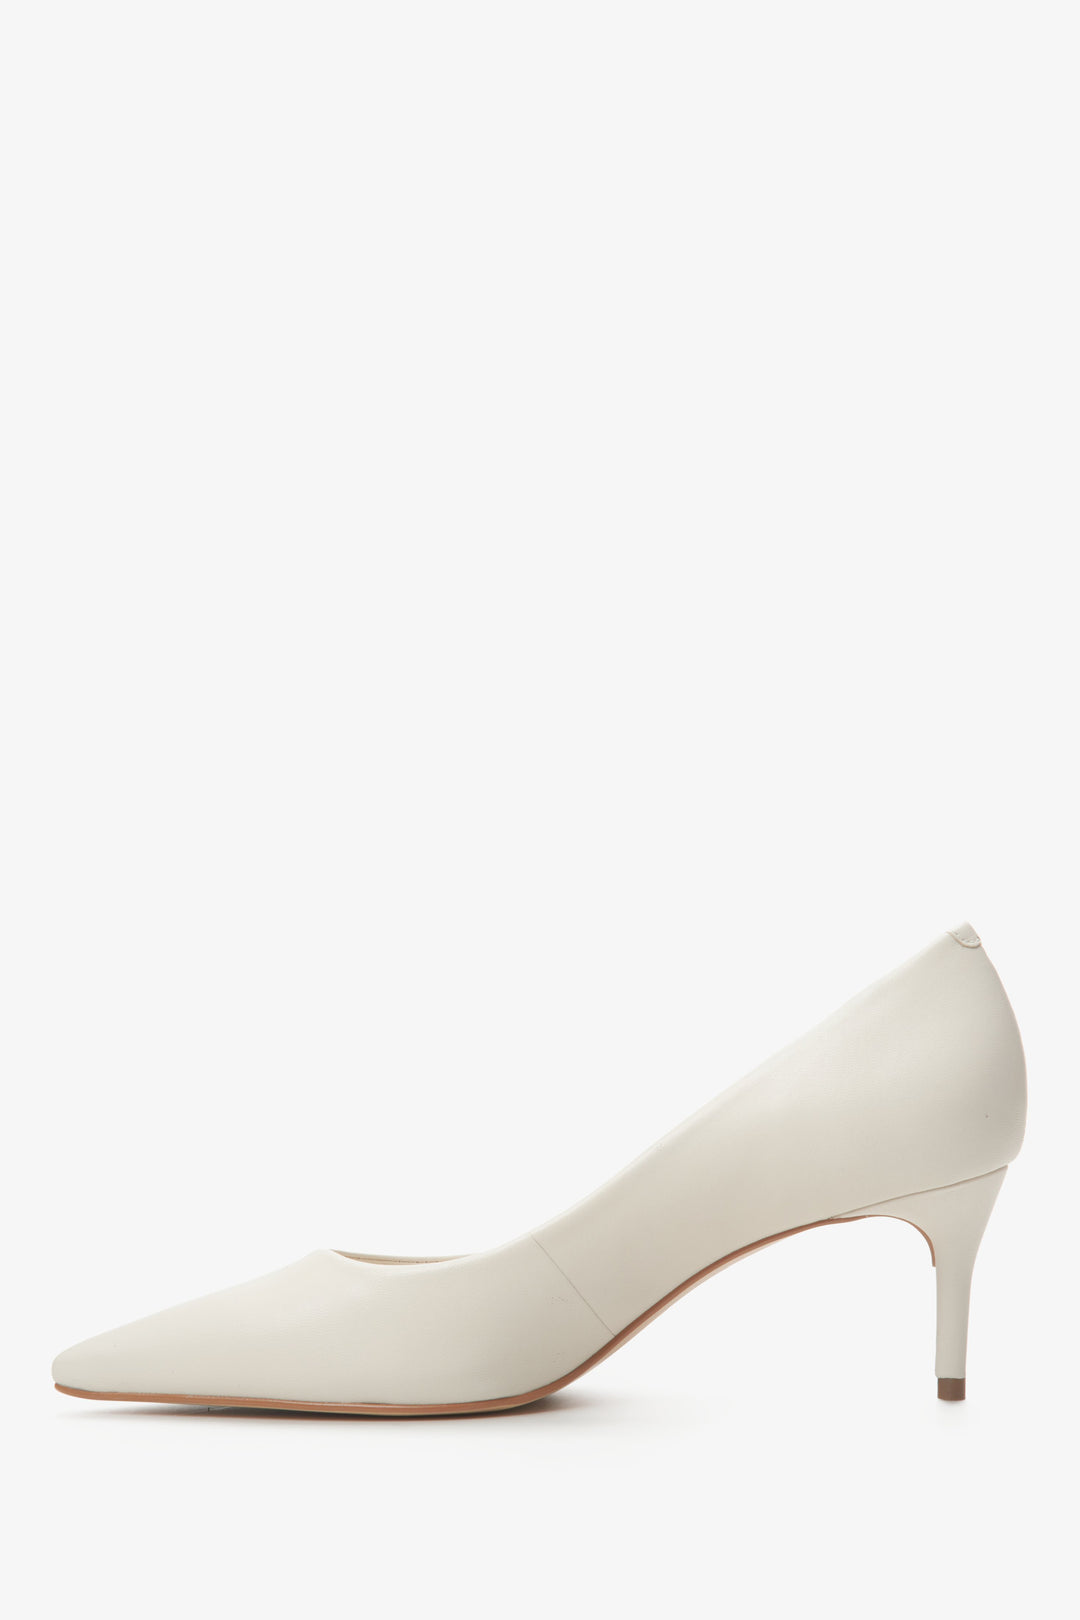 Women's light beige leather pumps by Estro - shoe profile.